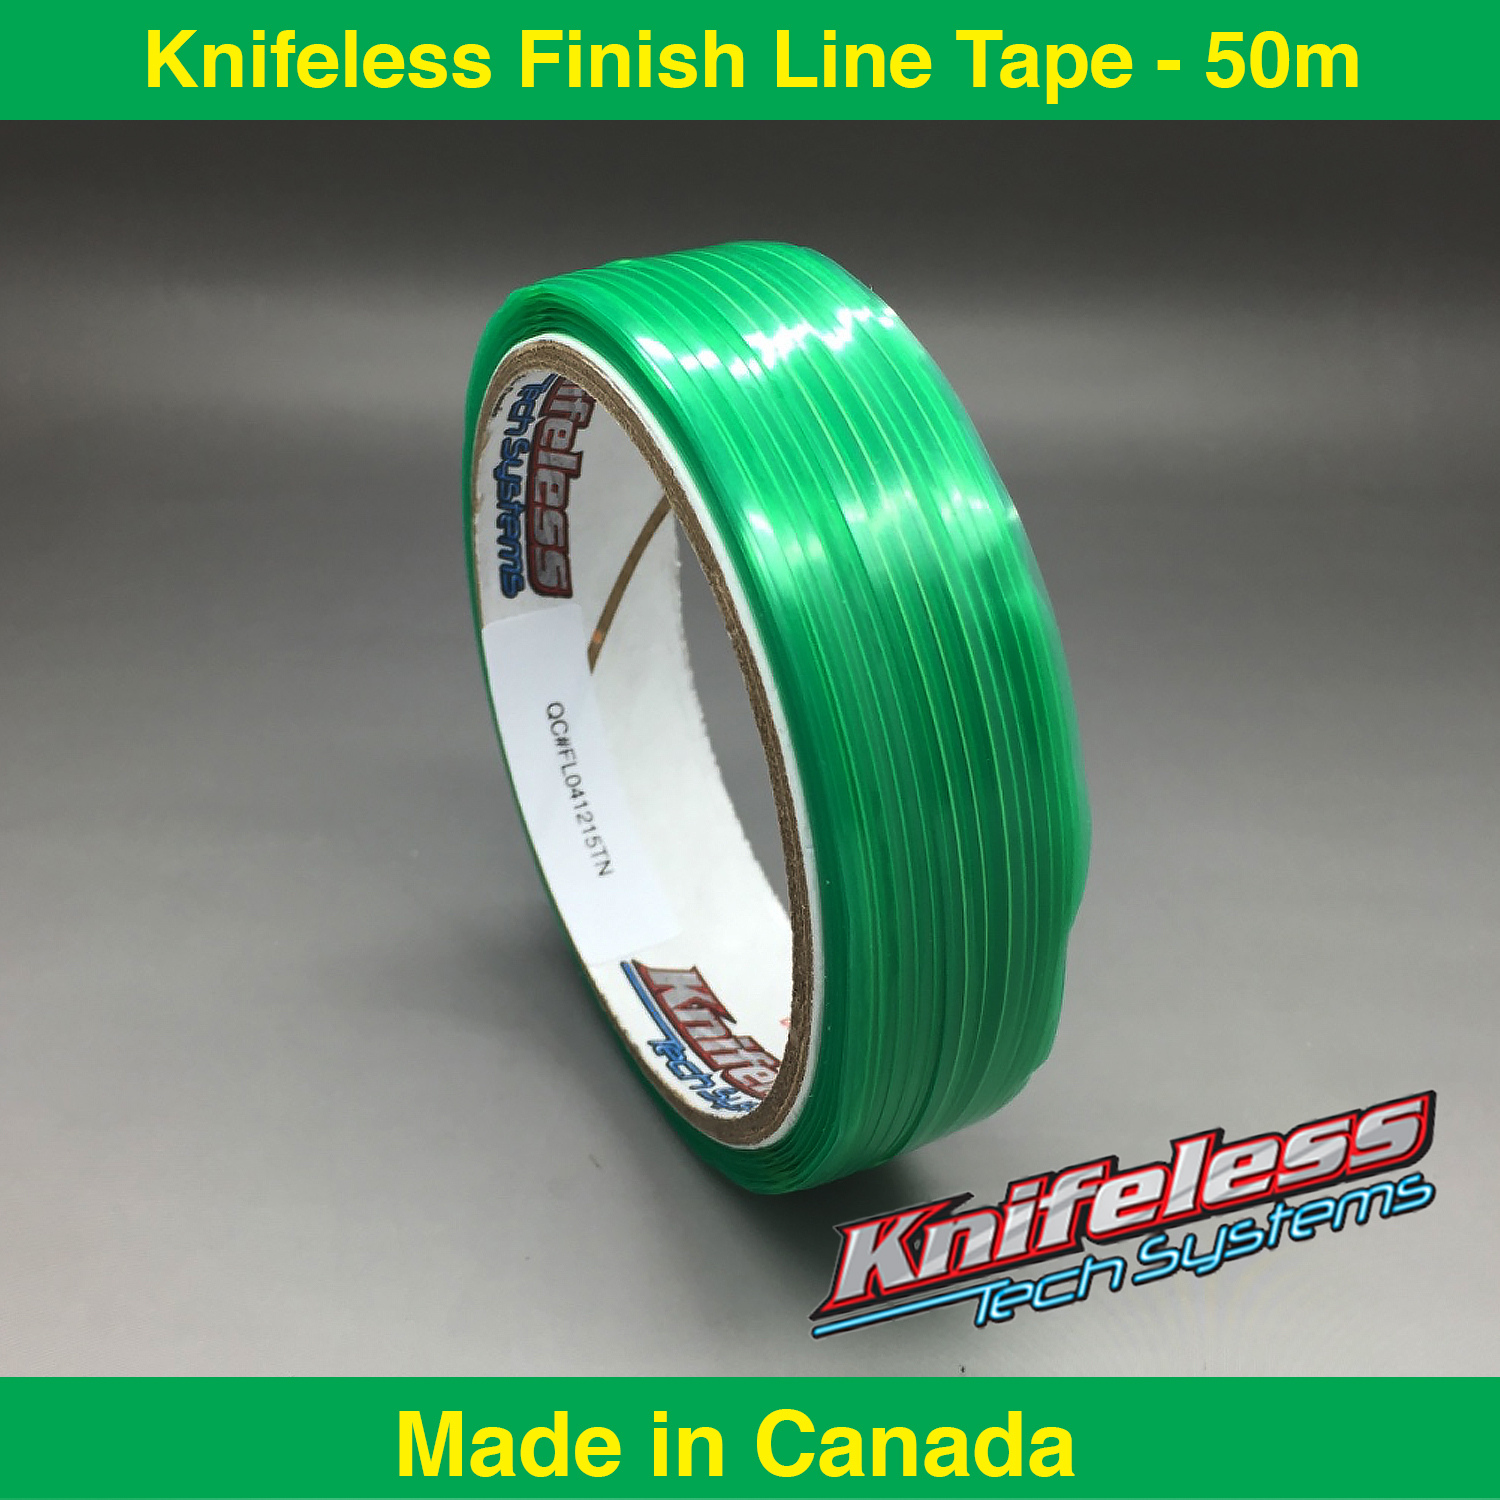 Finish Line Knife-less Tape